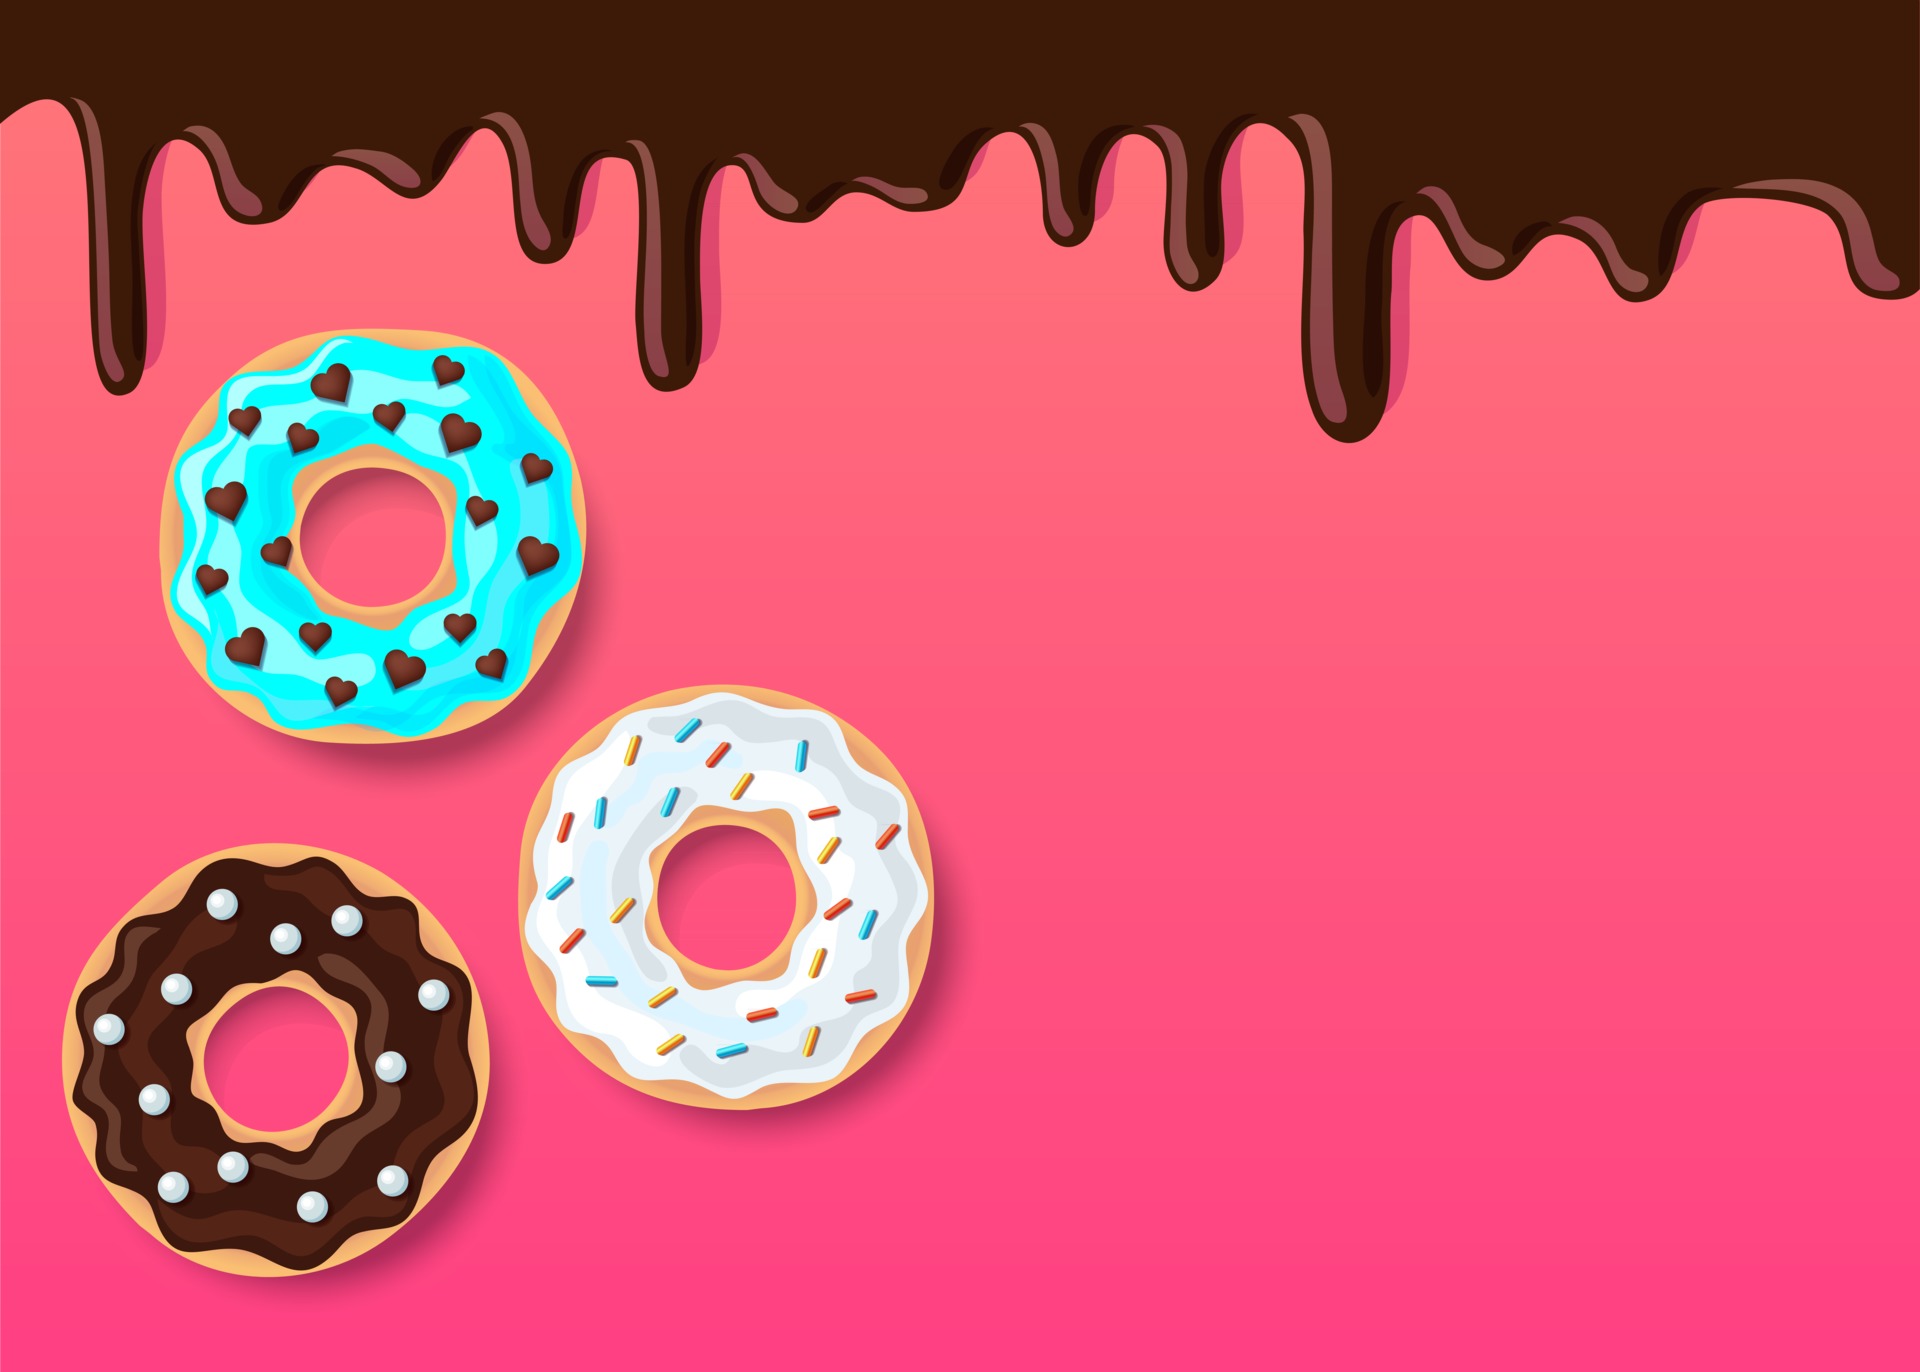 Món bánh donut kết hợp với màu hồng nóng bỏng sẽ khiến bạn cảm thấy thèm thuồng. Hình minh hoạ quyến rũ này sẽ đưa bạn vào một thế giới tuyệt vời của đồ ăn ngọt ngào và màu sắc tươi tắn.